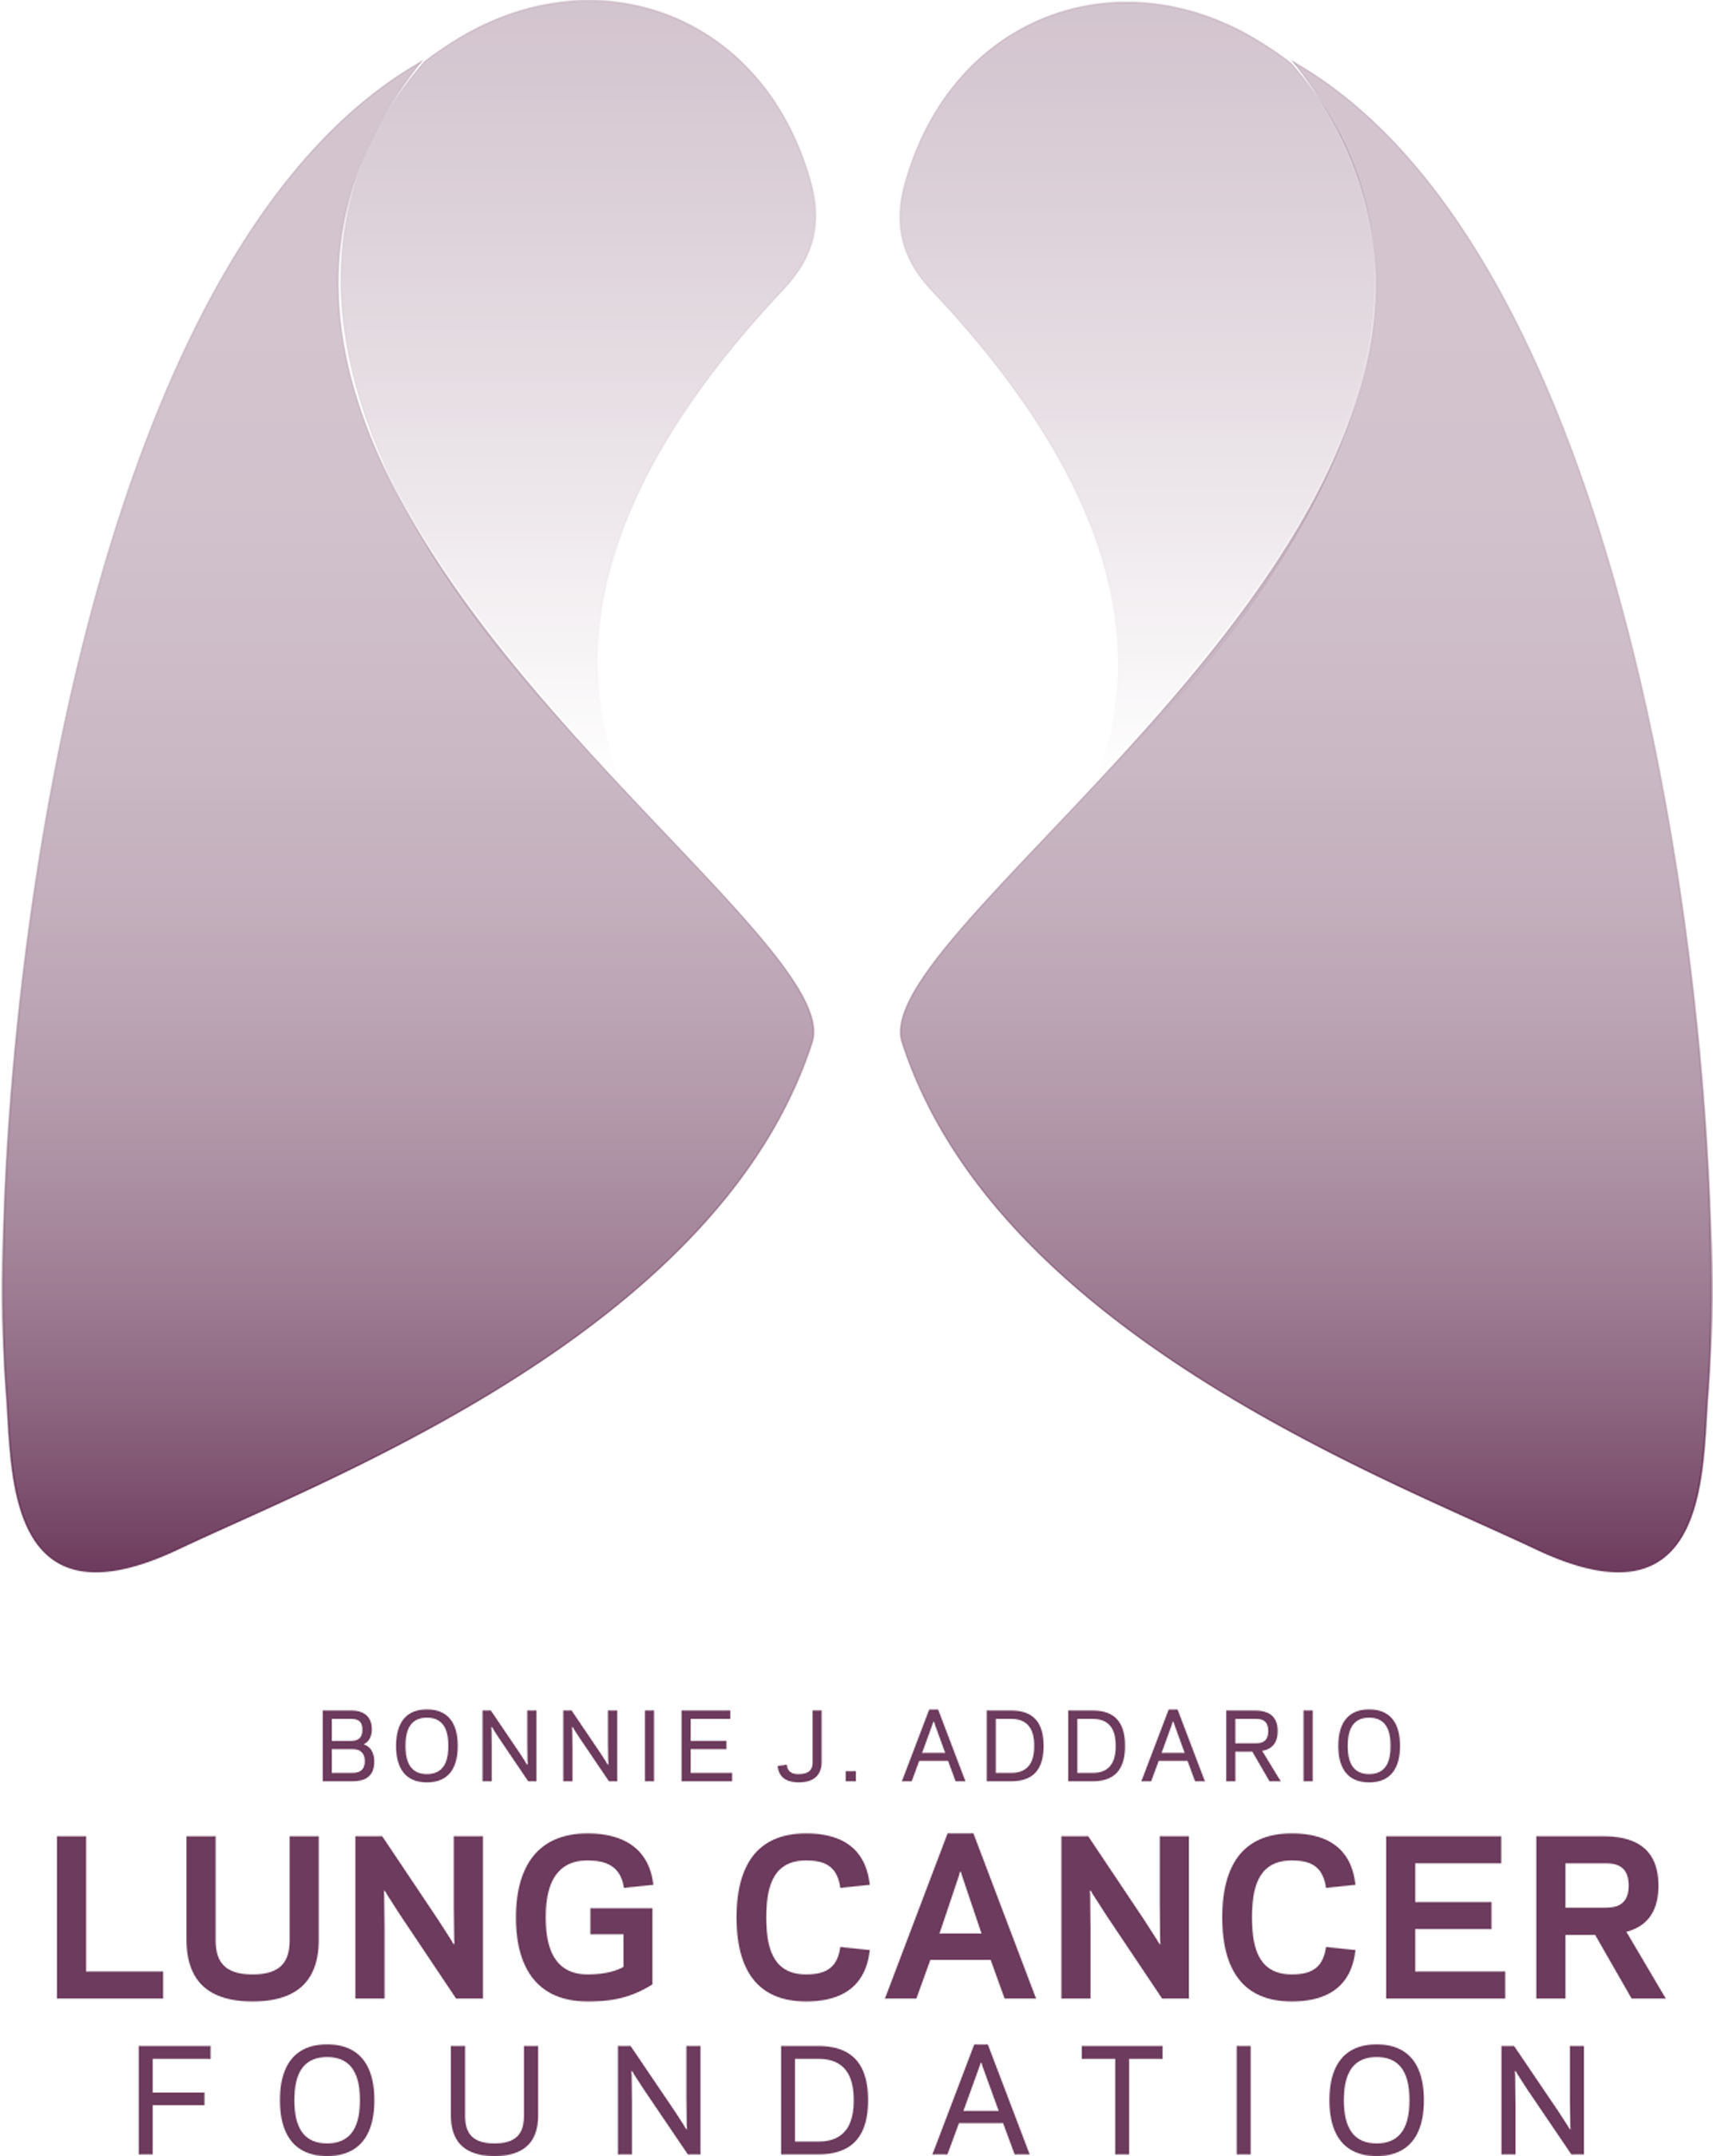 Bonnie J. Addario Lung Cancer Foundation logo. (PRNewsFoto/Addario Lung Cancer Foundation)